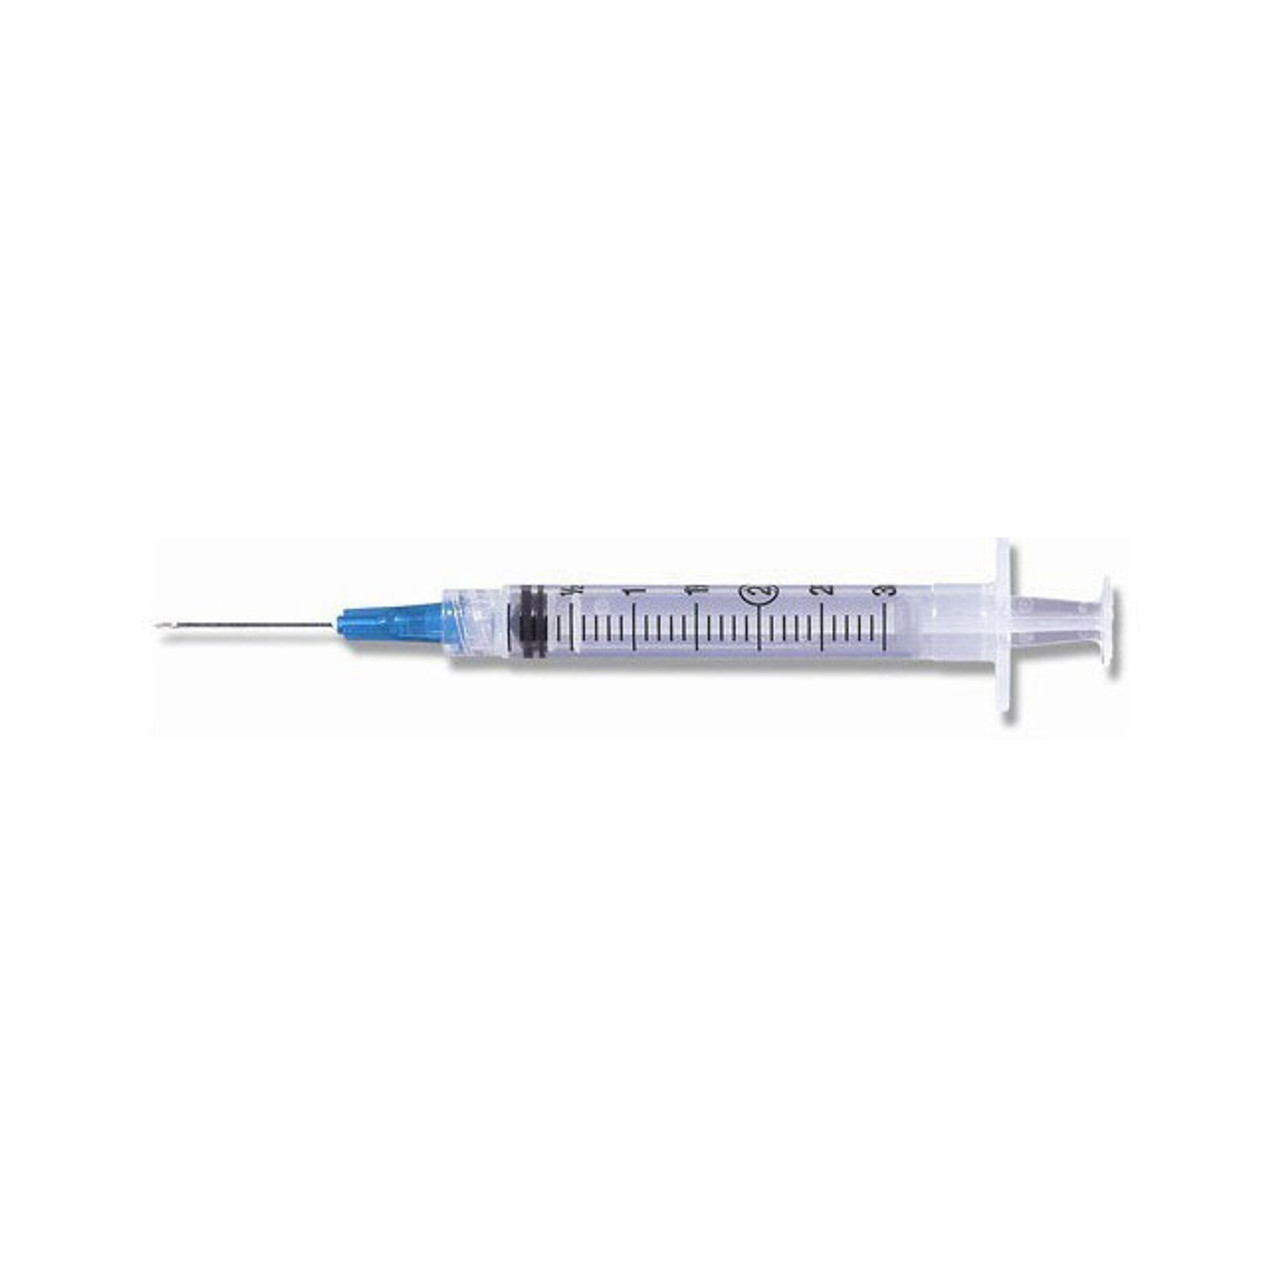 Terumo SS-03L2516 Syringe & Needle HYPODERMIC 3cc 25 G x 5/8" Luer/Lok ULTRA TW BX/100, BX